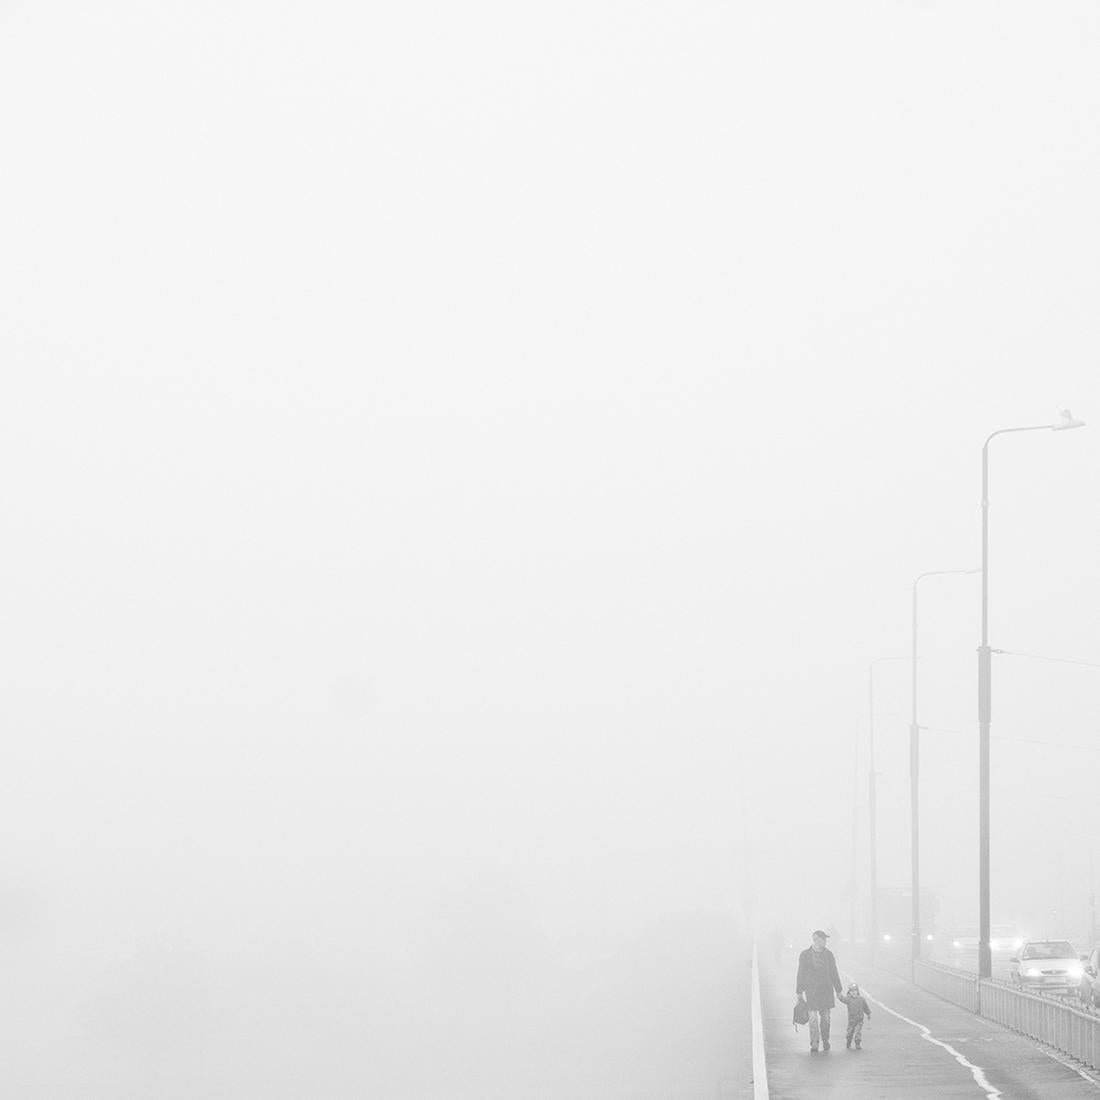 Man in Time - Zeitgenössische minimalistische Straßenfotografie, schwarz-weiß